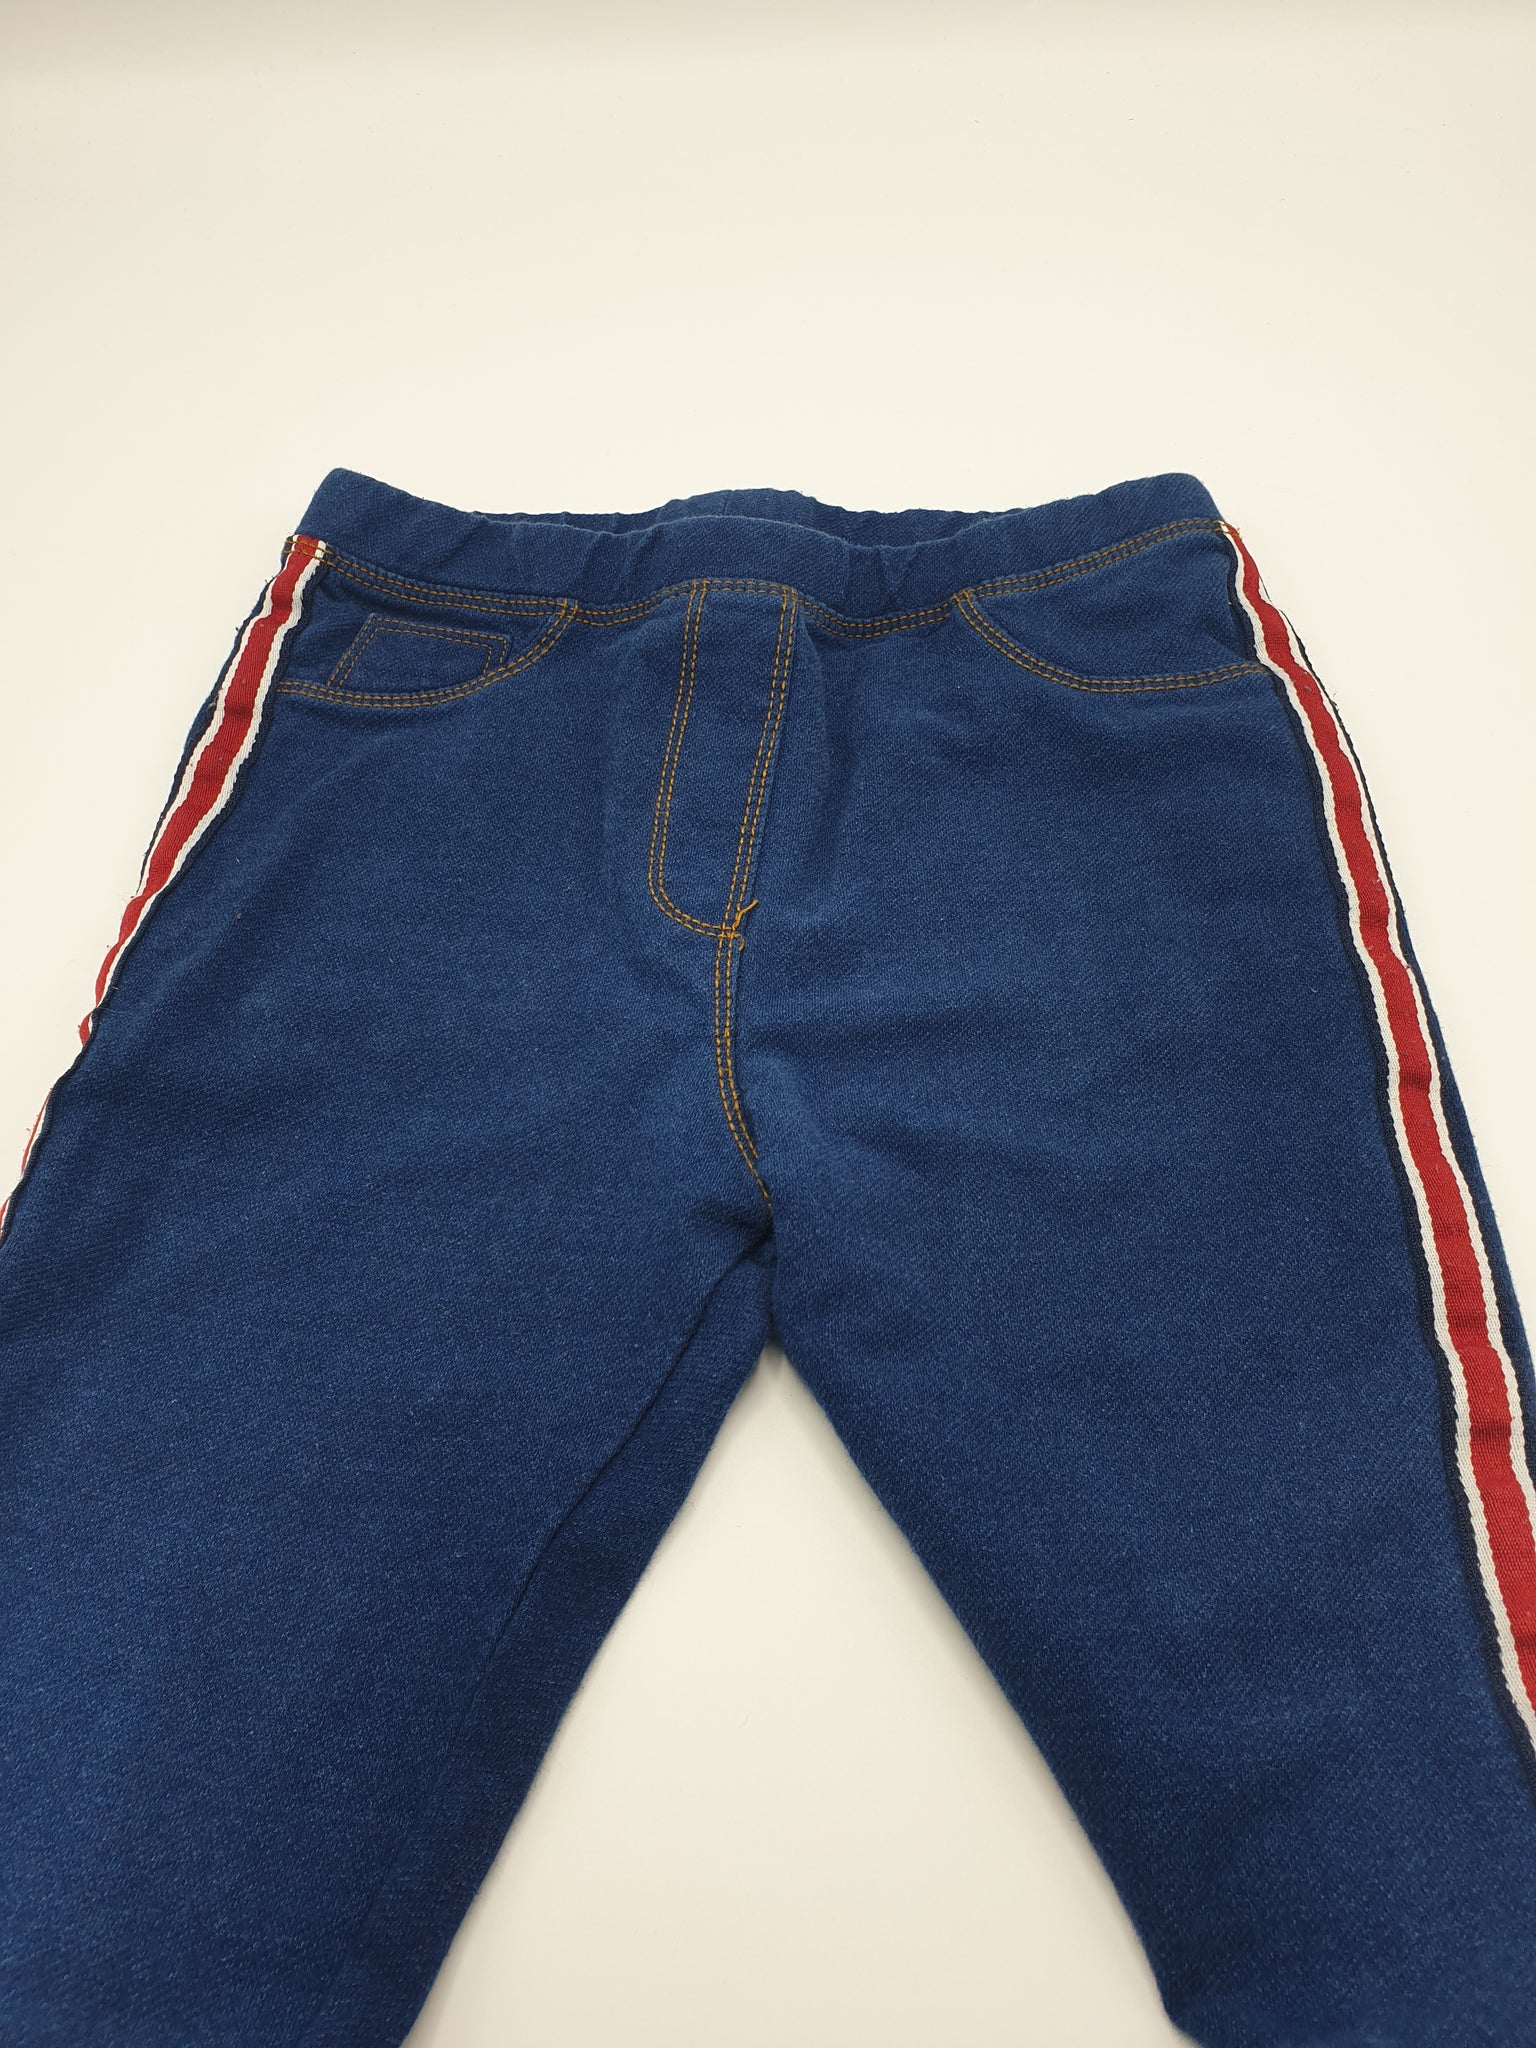 Pantalon Zara 10 ans 140 cm (petits défauts)